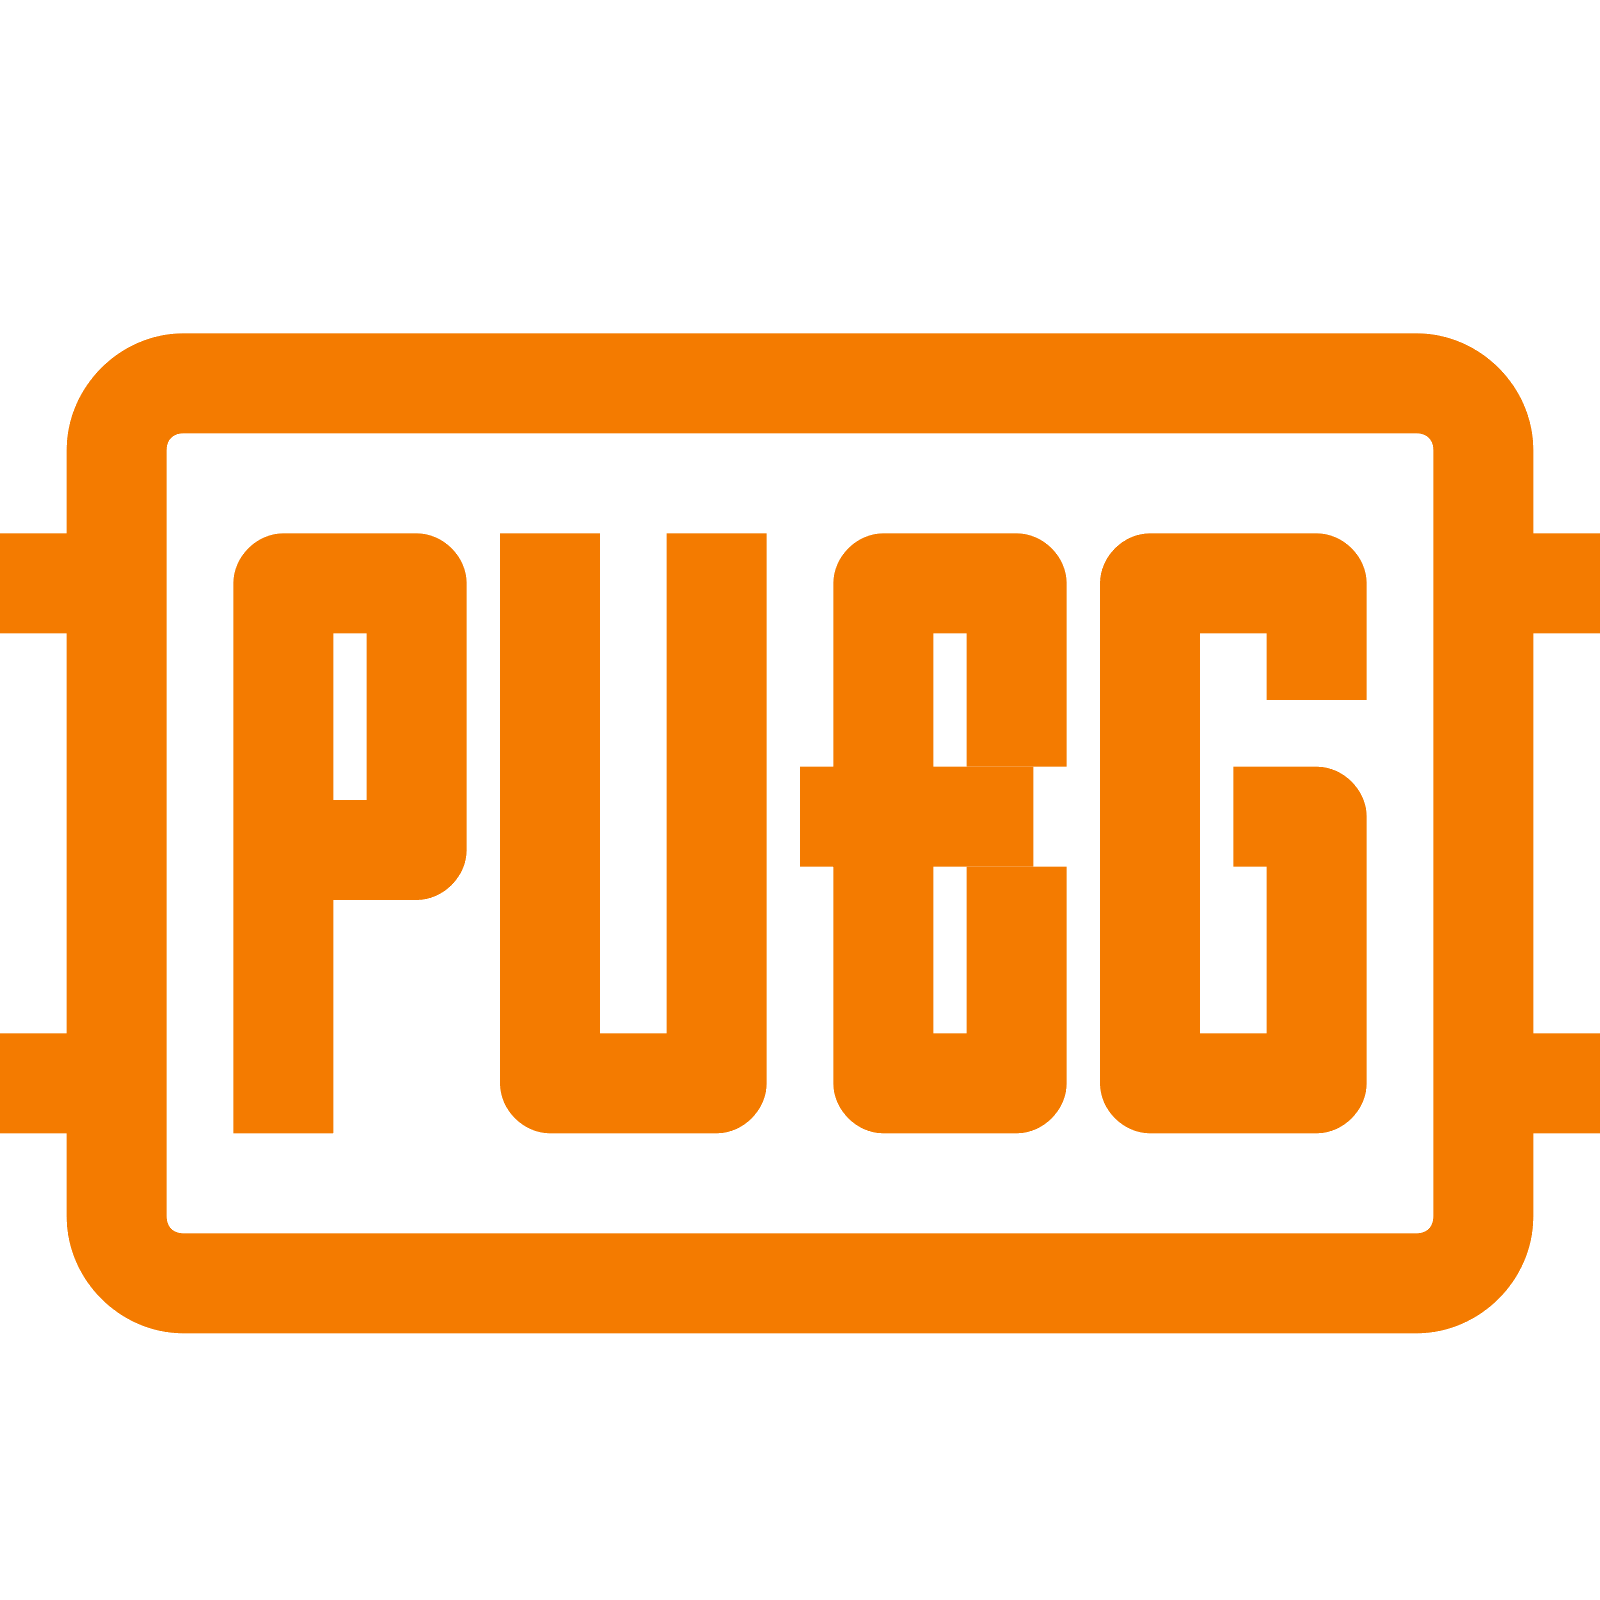 Pubg Logo Png Hd, Transparent